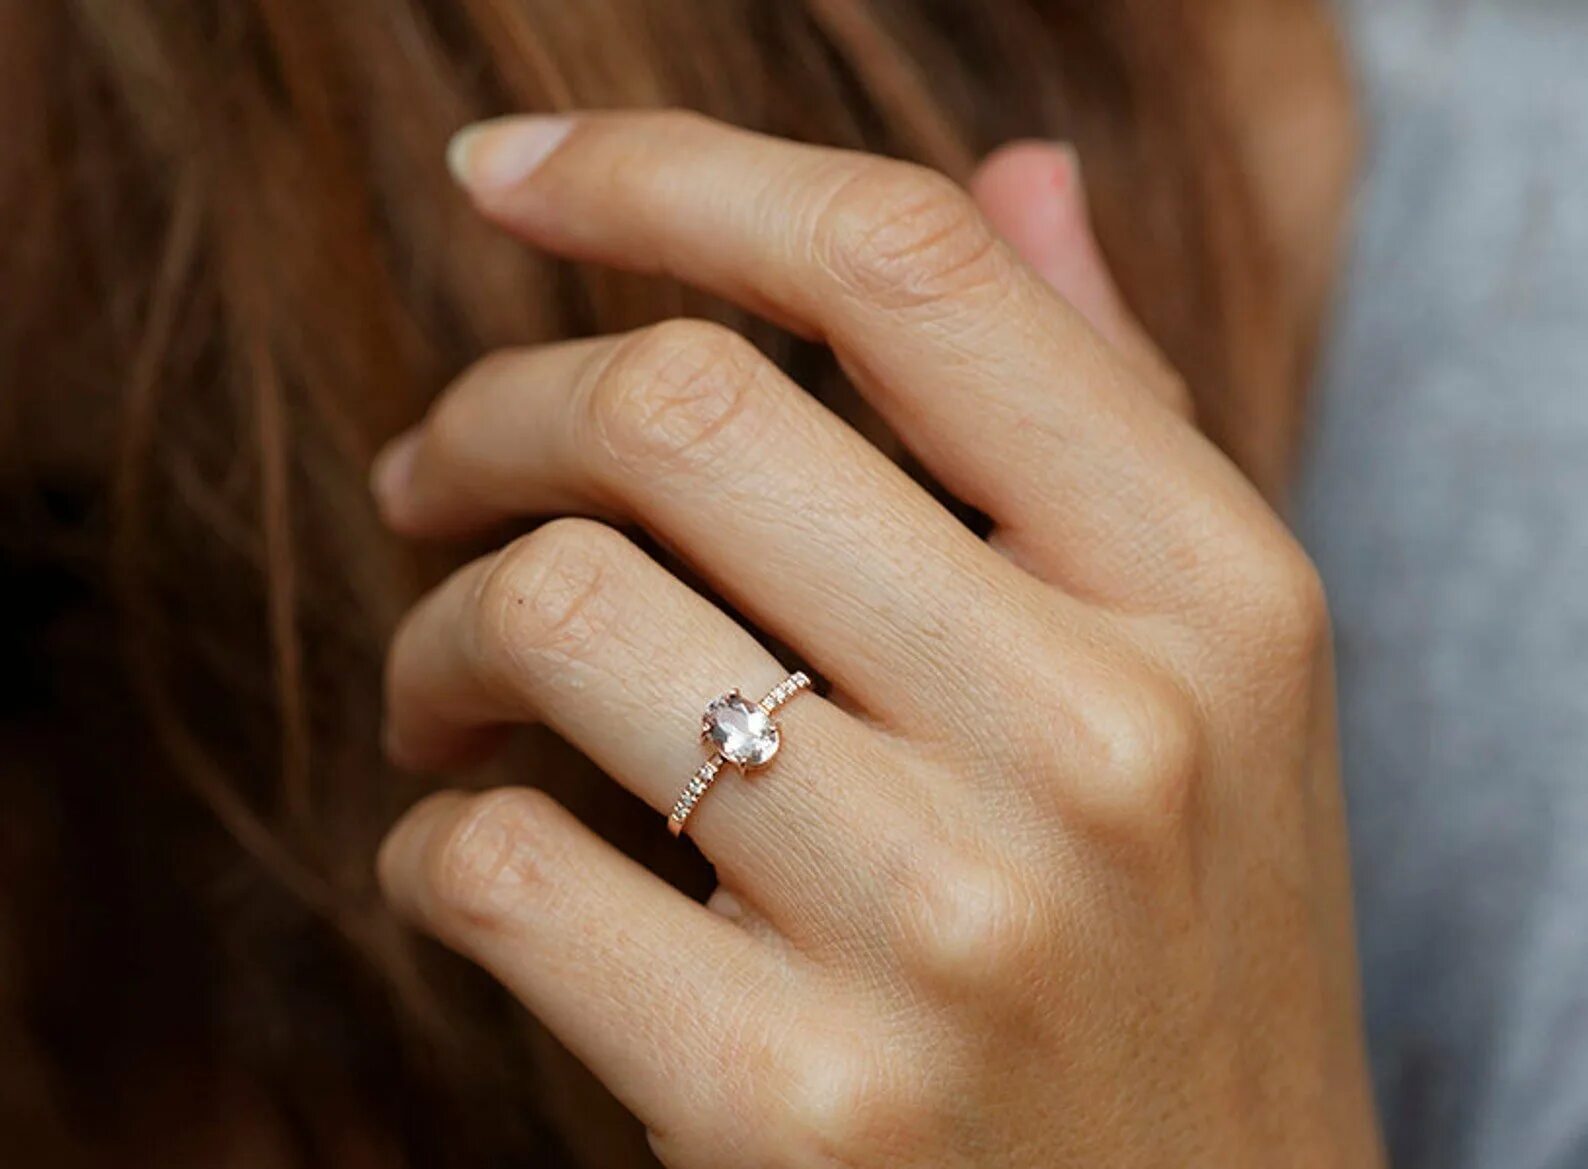 Простое кольцо девушке. Кольцо с бриллиантом на руке. Обручальное кольцо для девушки. Обручальное и помолвочное кольцо. Кольцо для предложения.